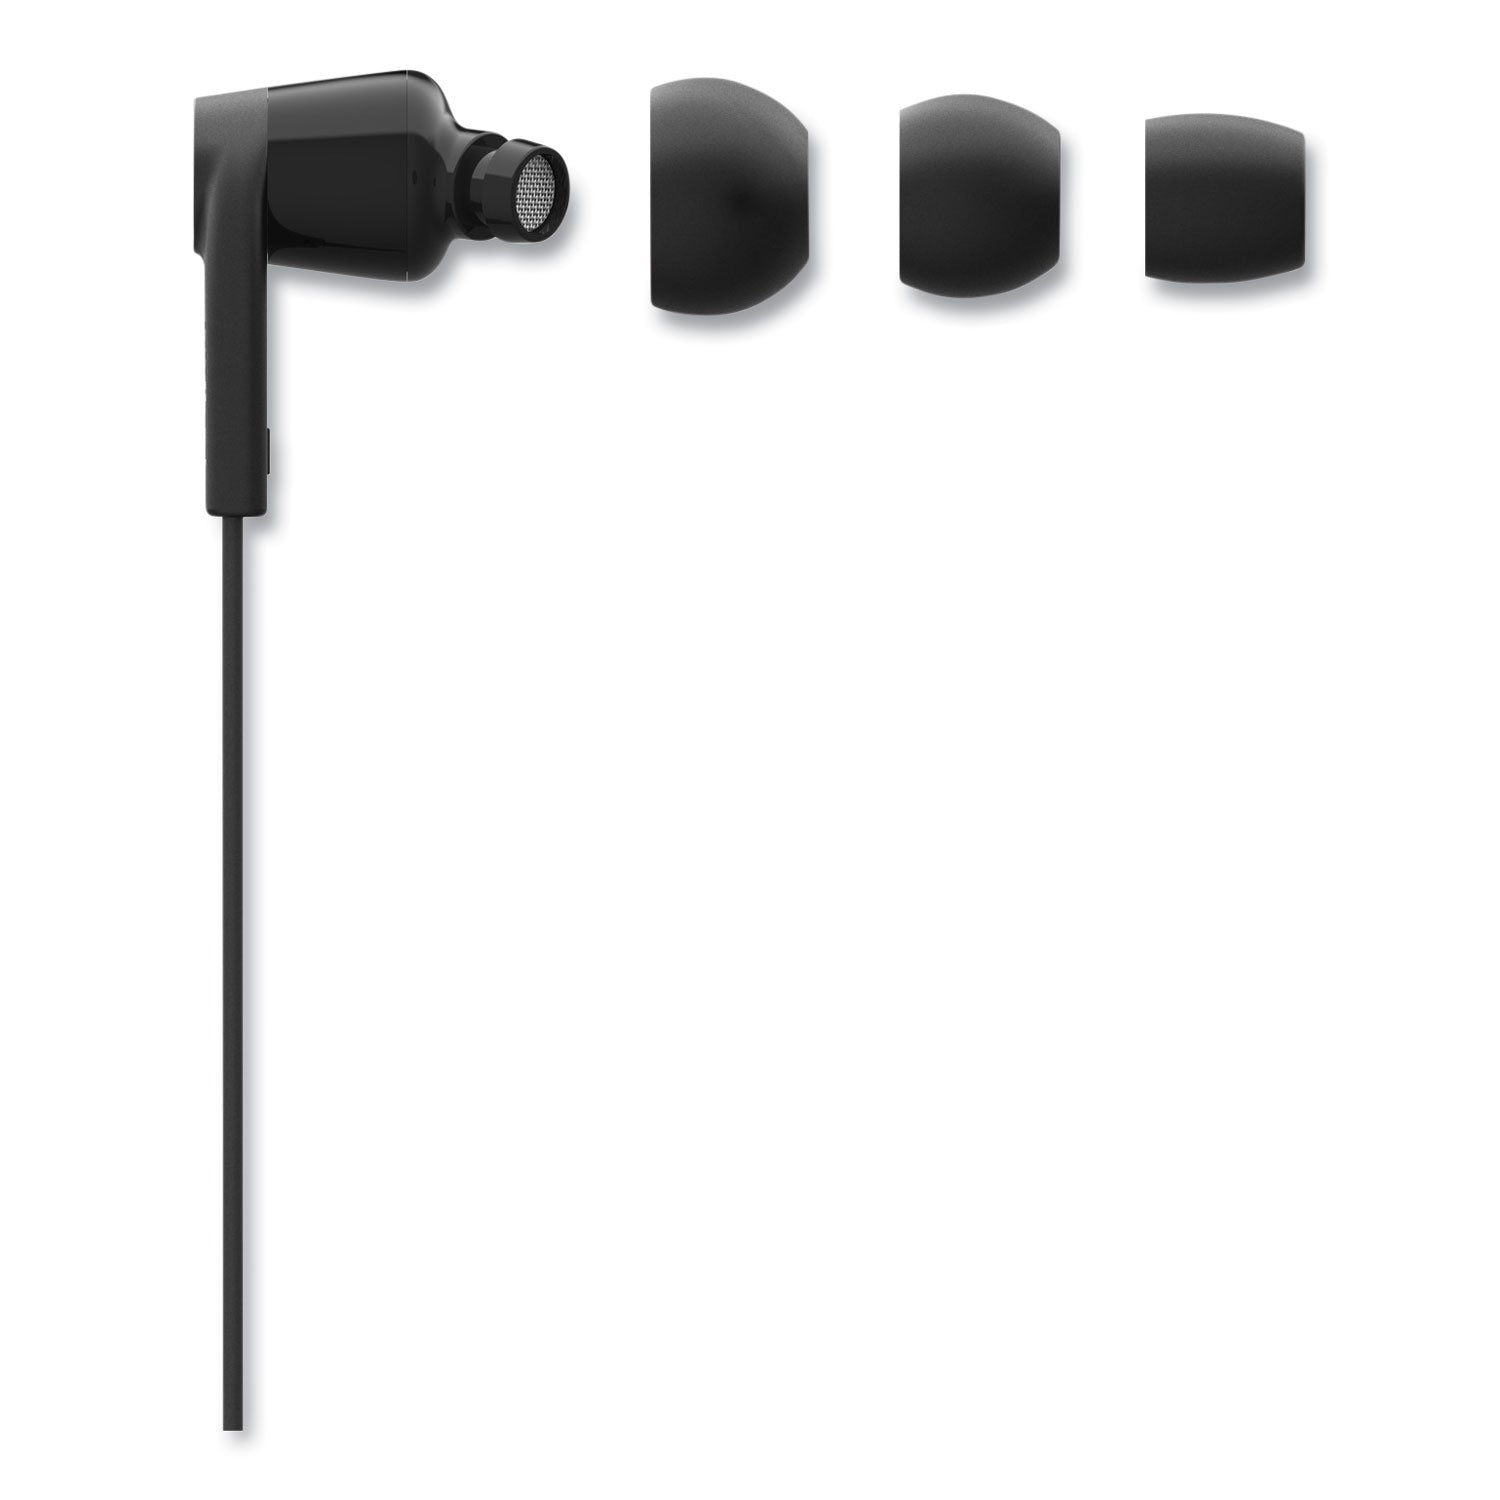 soundform-headphones-with-lightning-connector-44-cord-black_blkg3h0001btblk - 3